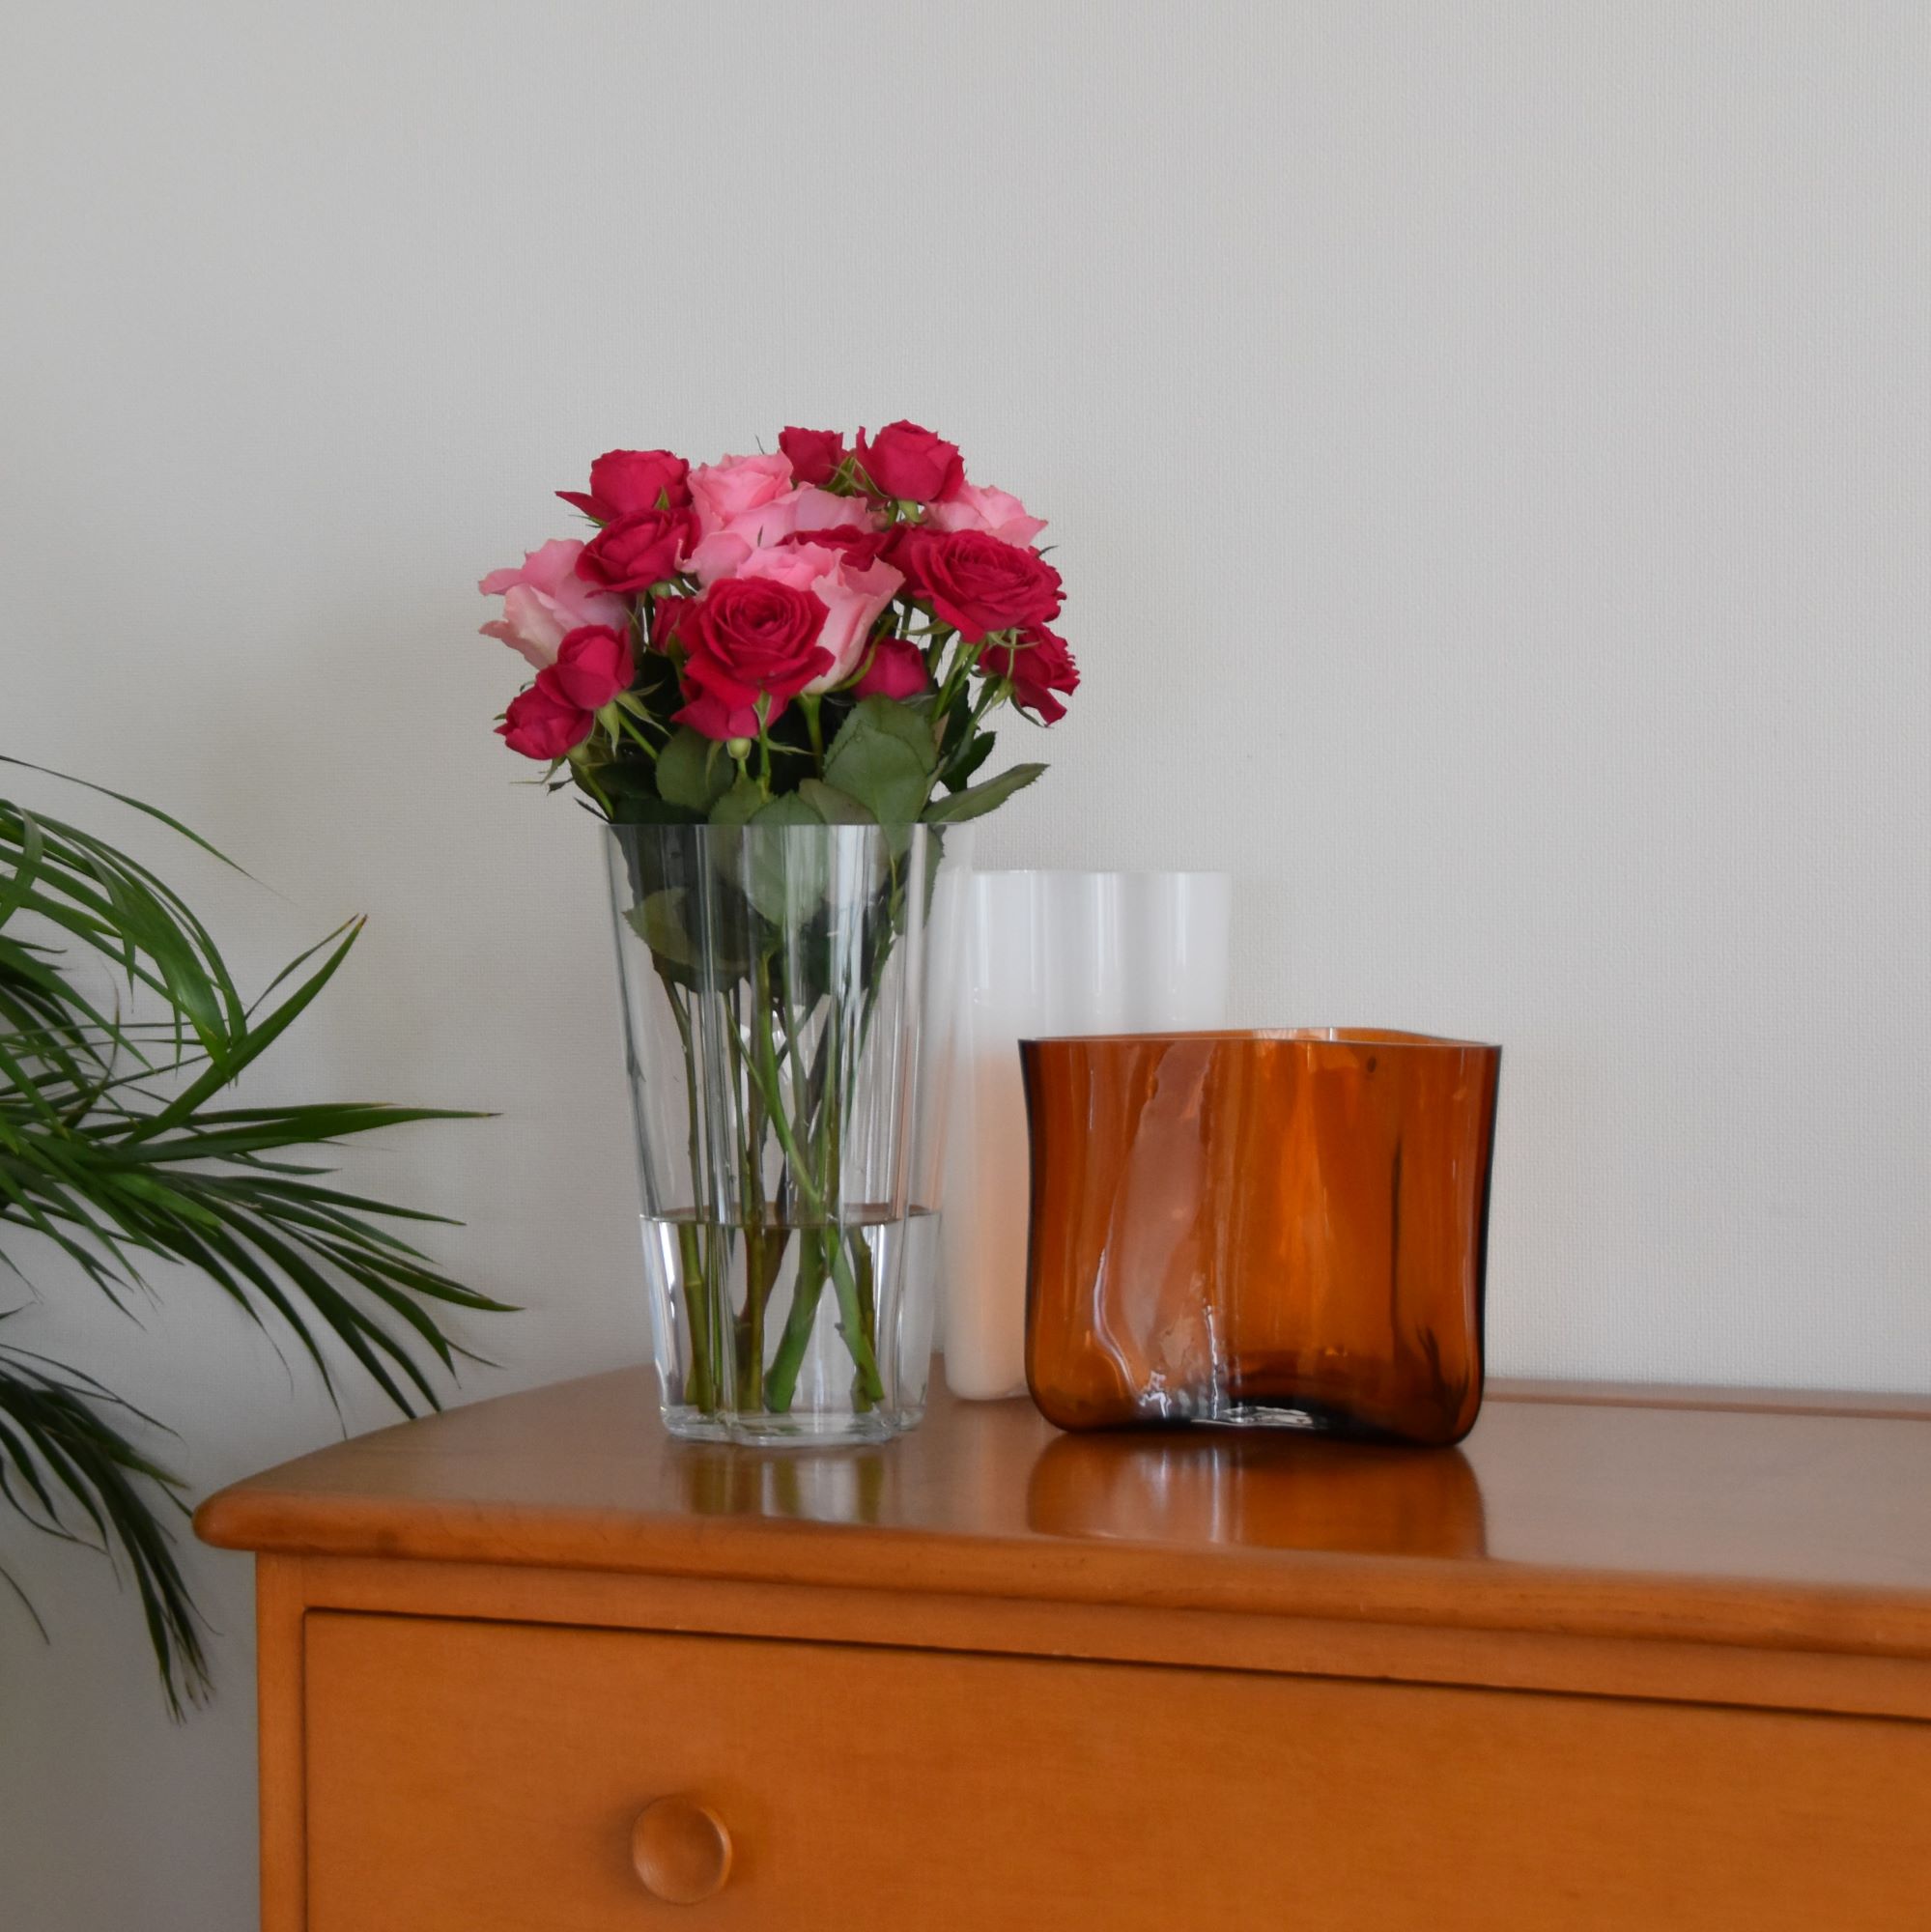 アアルトベース 飾りやすいサイズのフラワーベース バラのブーケを飾りました【iittala Alvar Aalto vase 220mm